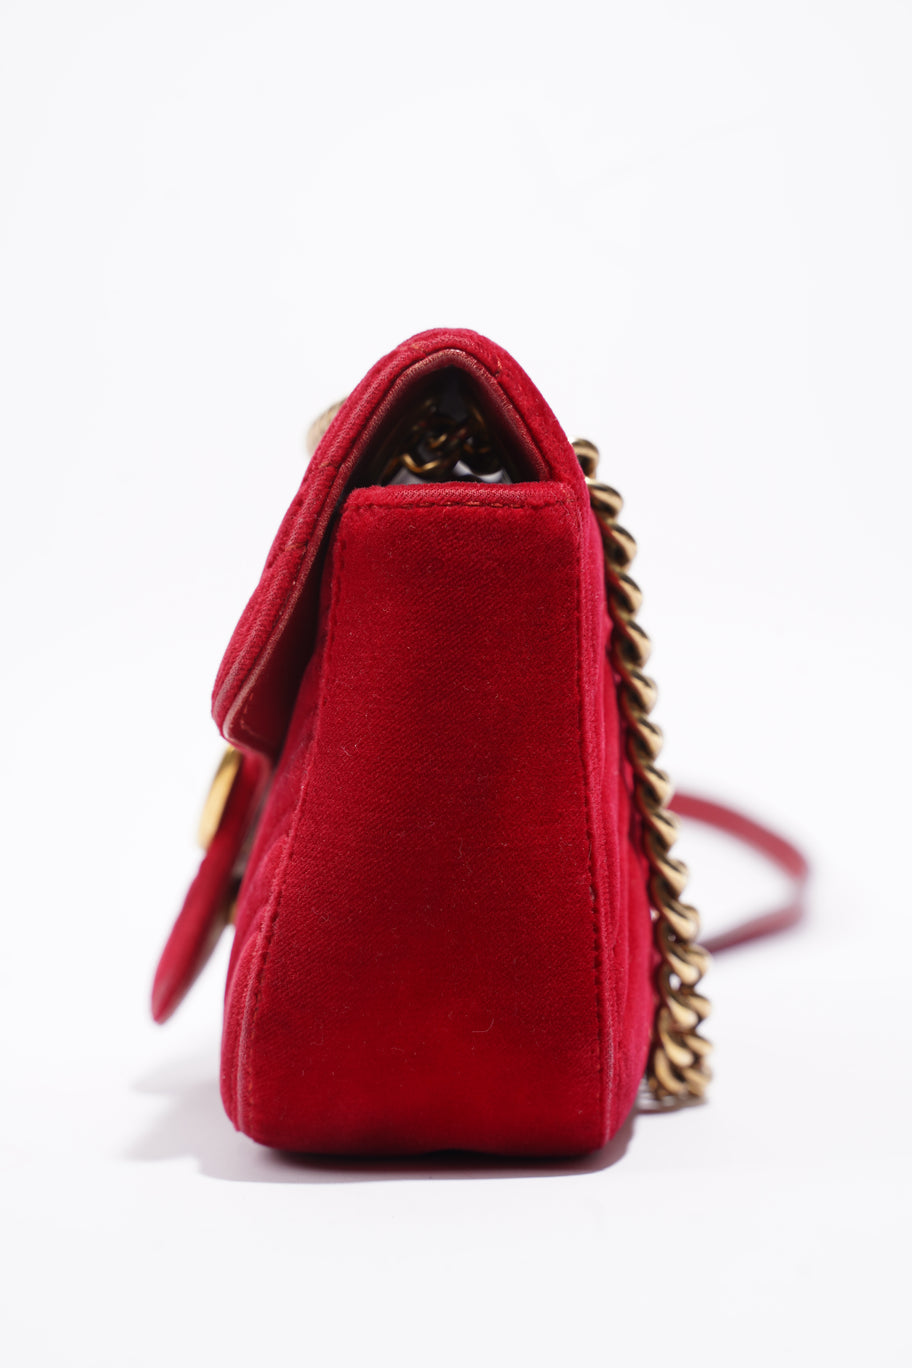 GG Marmont Bag Red Velvet Mini Image 3